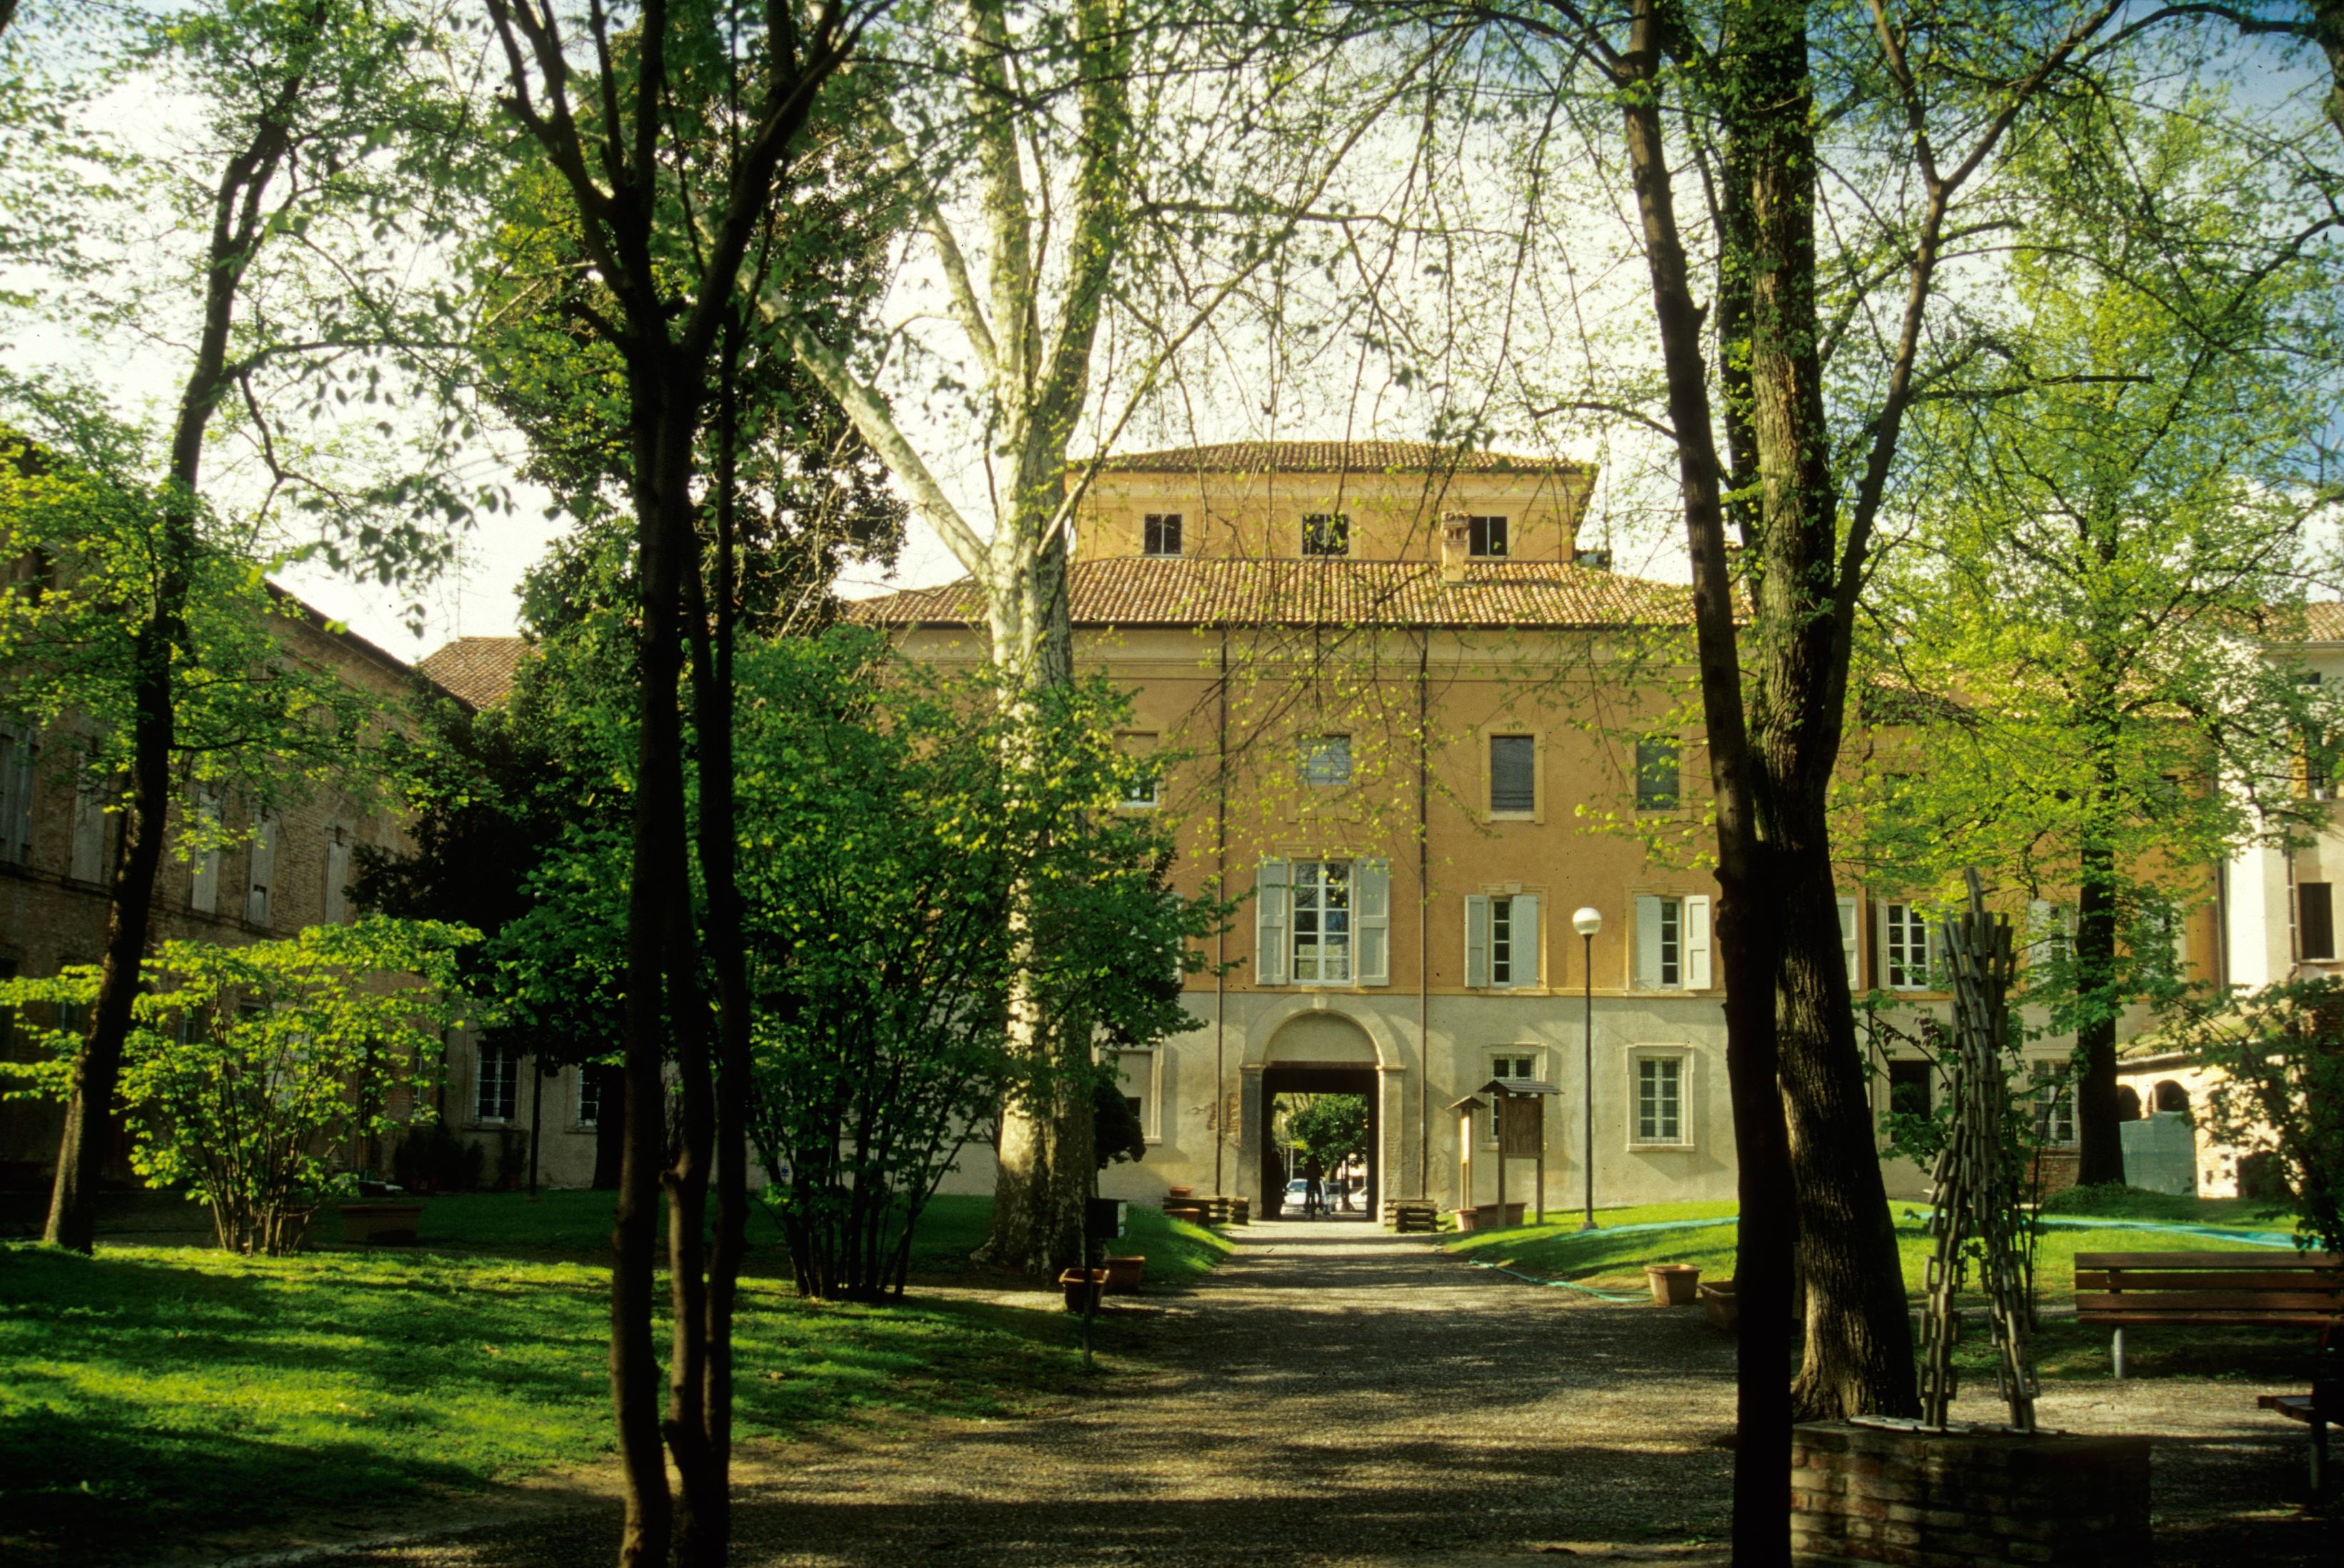 foto: https://upload.wikimedia.org/wikipedia/commons/3/38/Palazzo_Sartoretti_e_parco_in_primavera.JPG